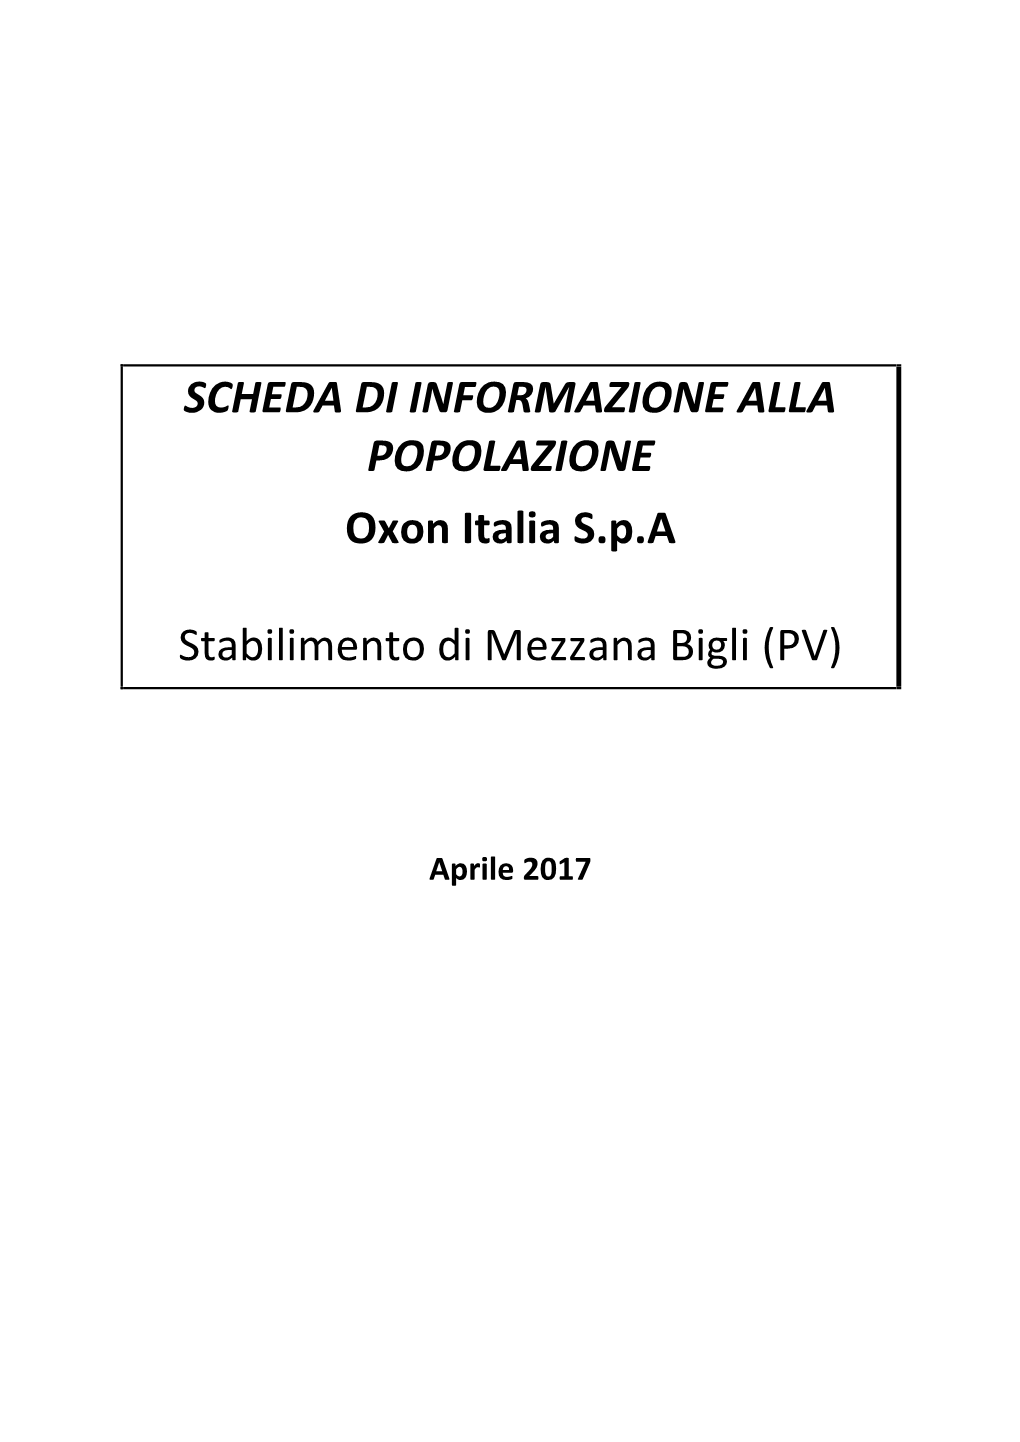 SCHEDA DI INFORMAZIONE ALLA POPOLAZIONE Oxon Italia S.P.A